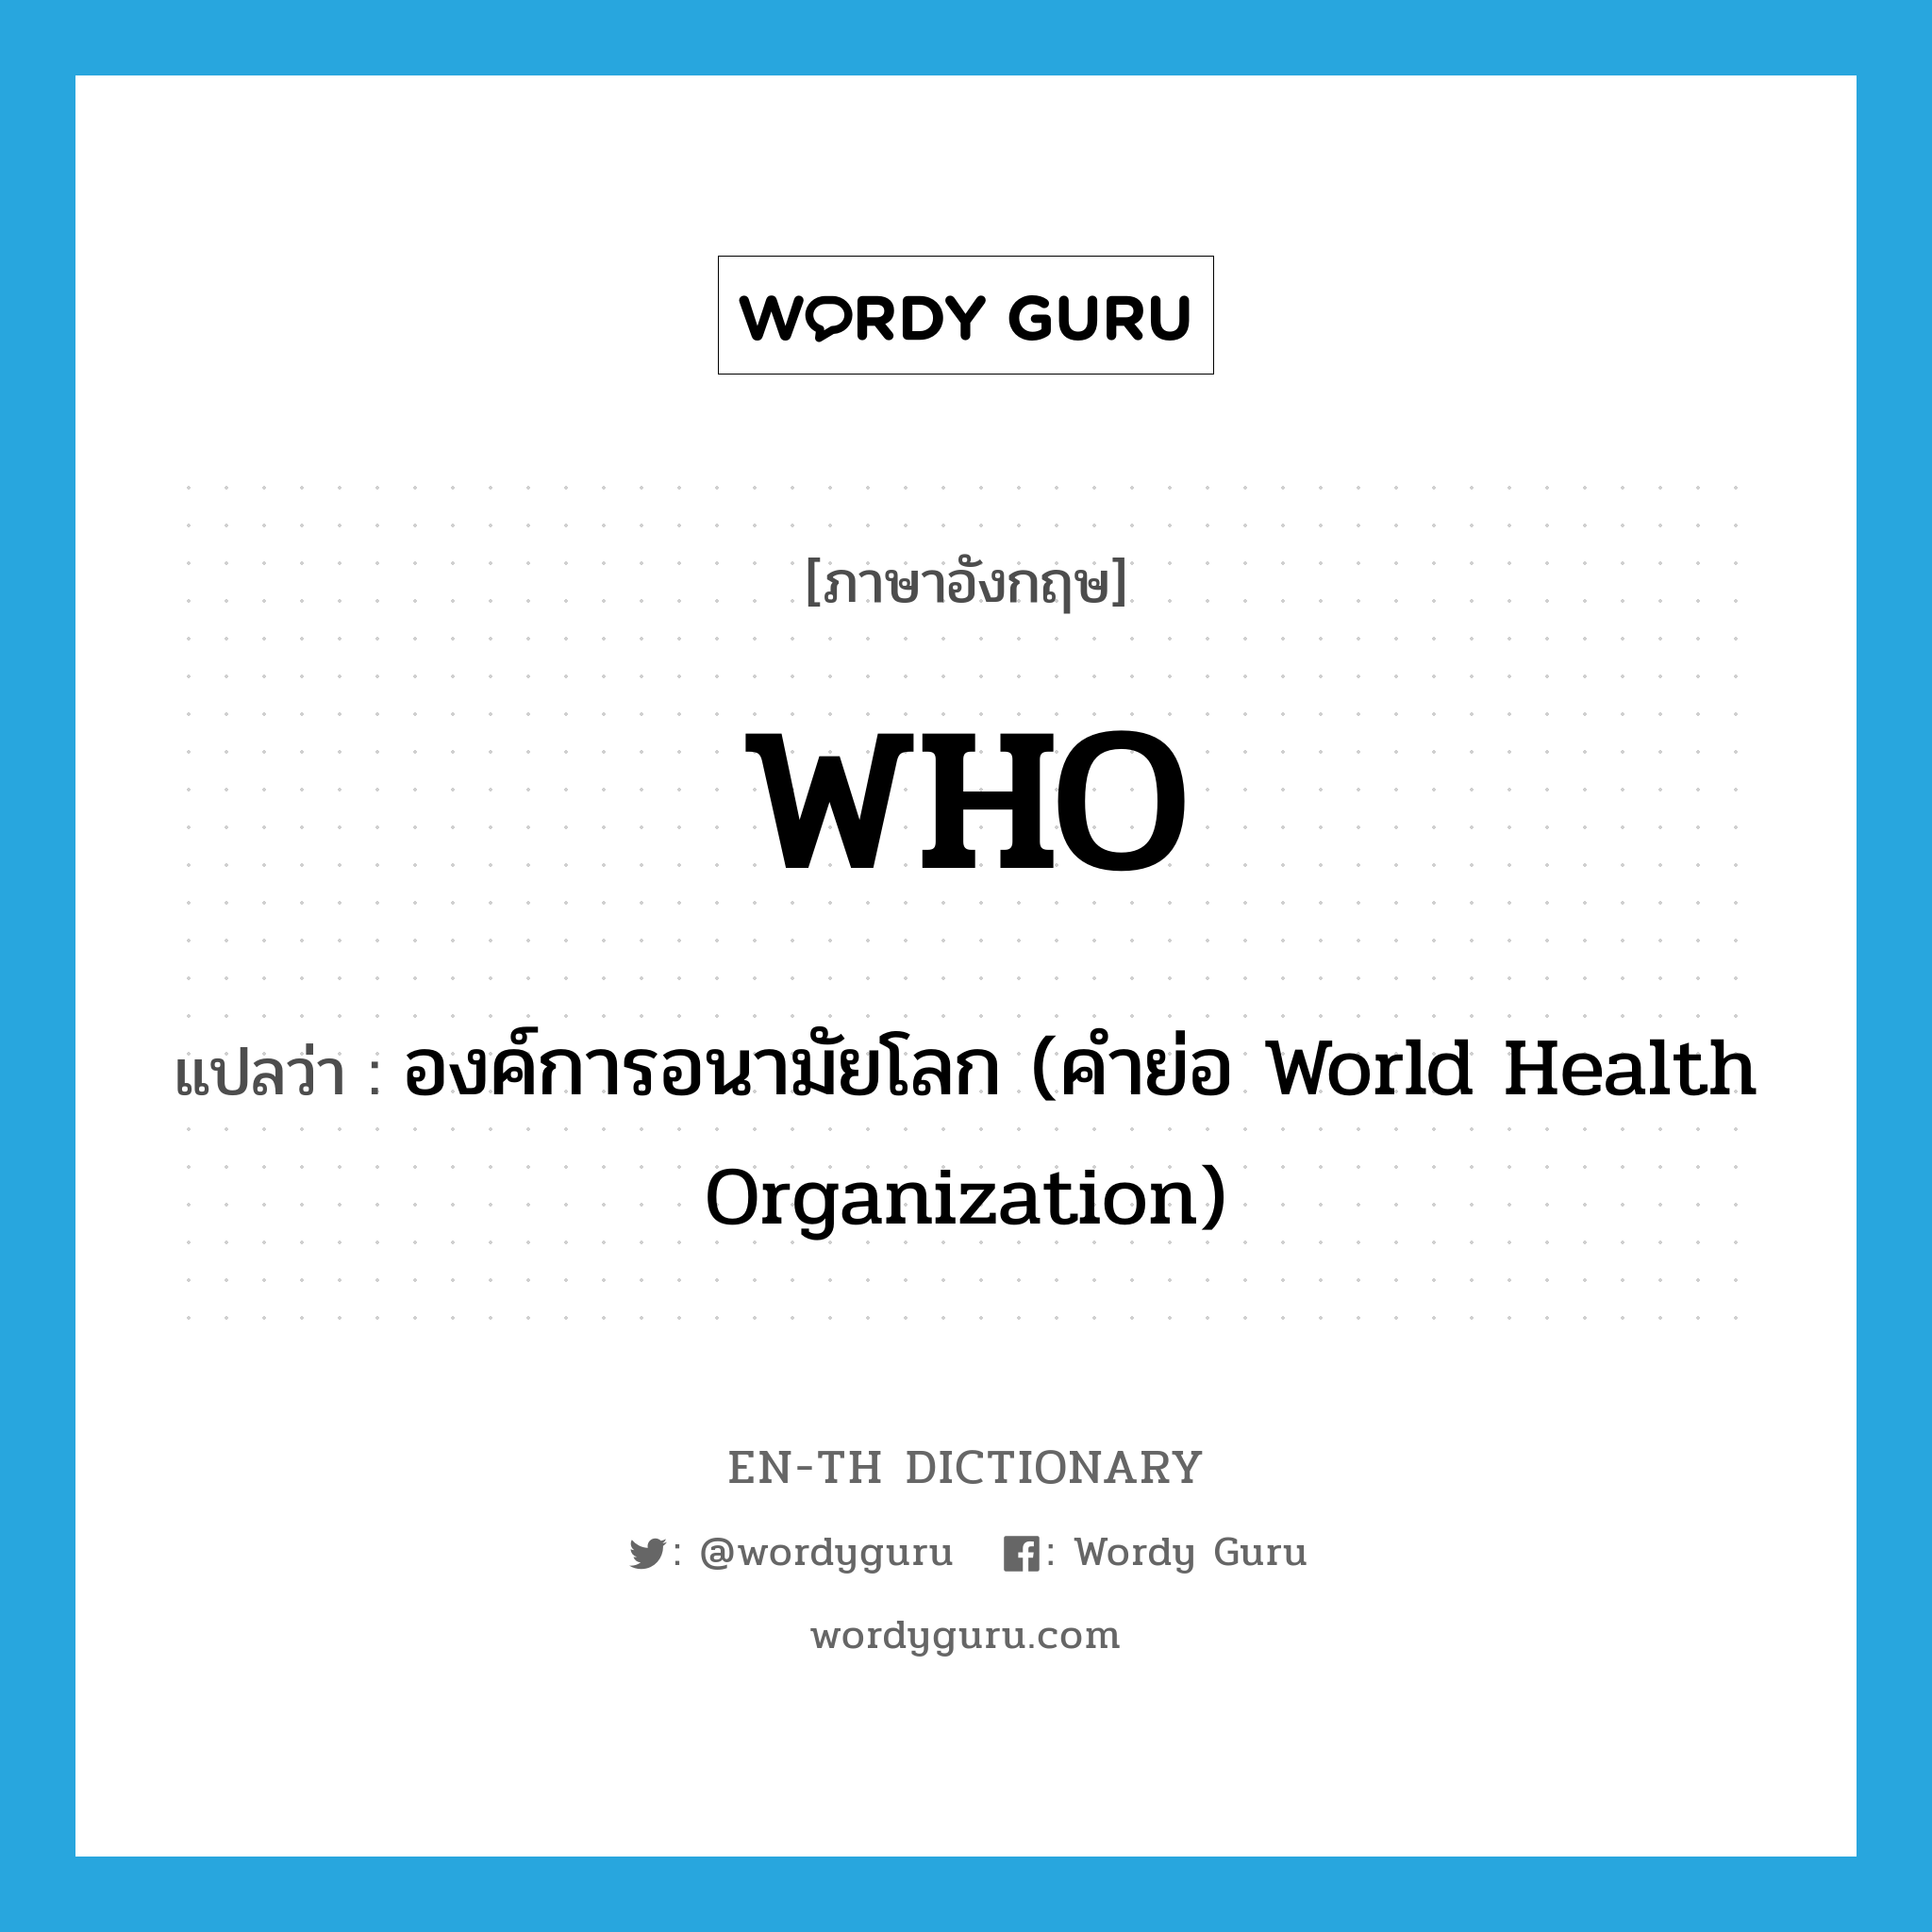 องค์การอนามัยโลก (คำย่อ World Health Organization) ภาษาอังกฤษ?, คำศัพท์ภาษาอังกฤษ องค์การอนามัยโลก (คำย่อ World Health Organization) แปลว่า WHO ประเภท ABBR หมวด ABBR